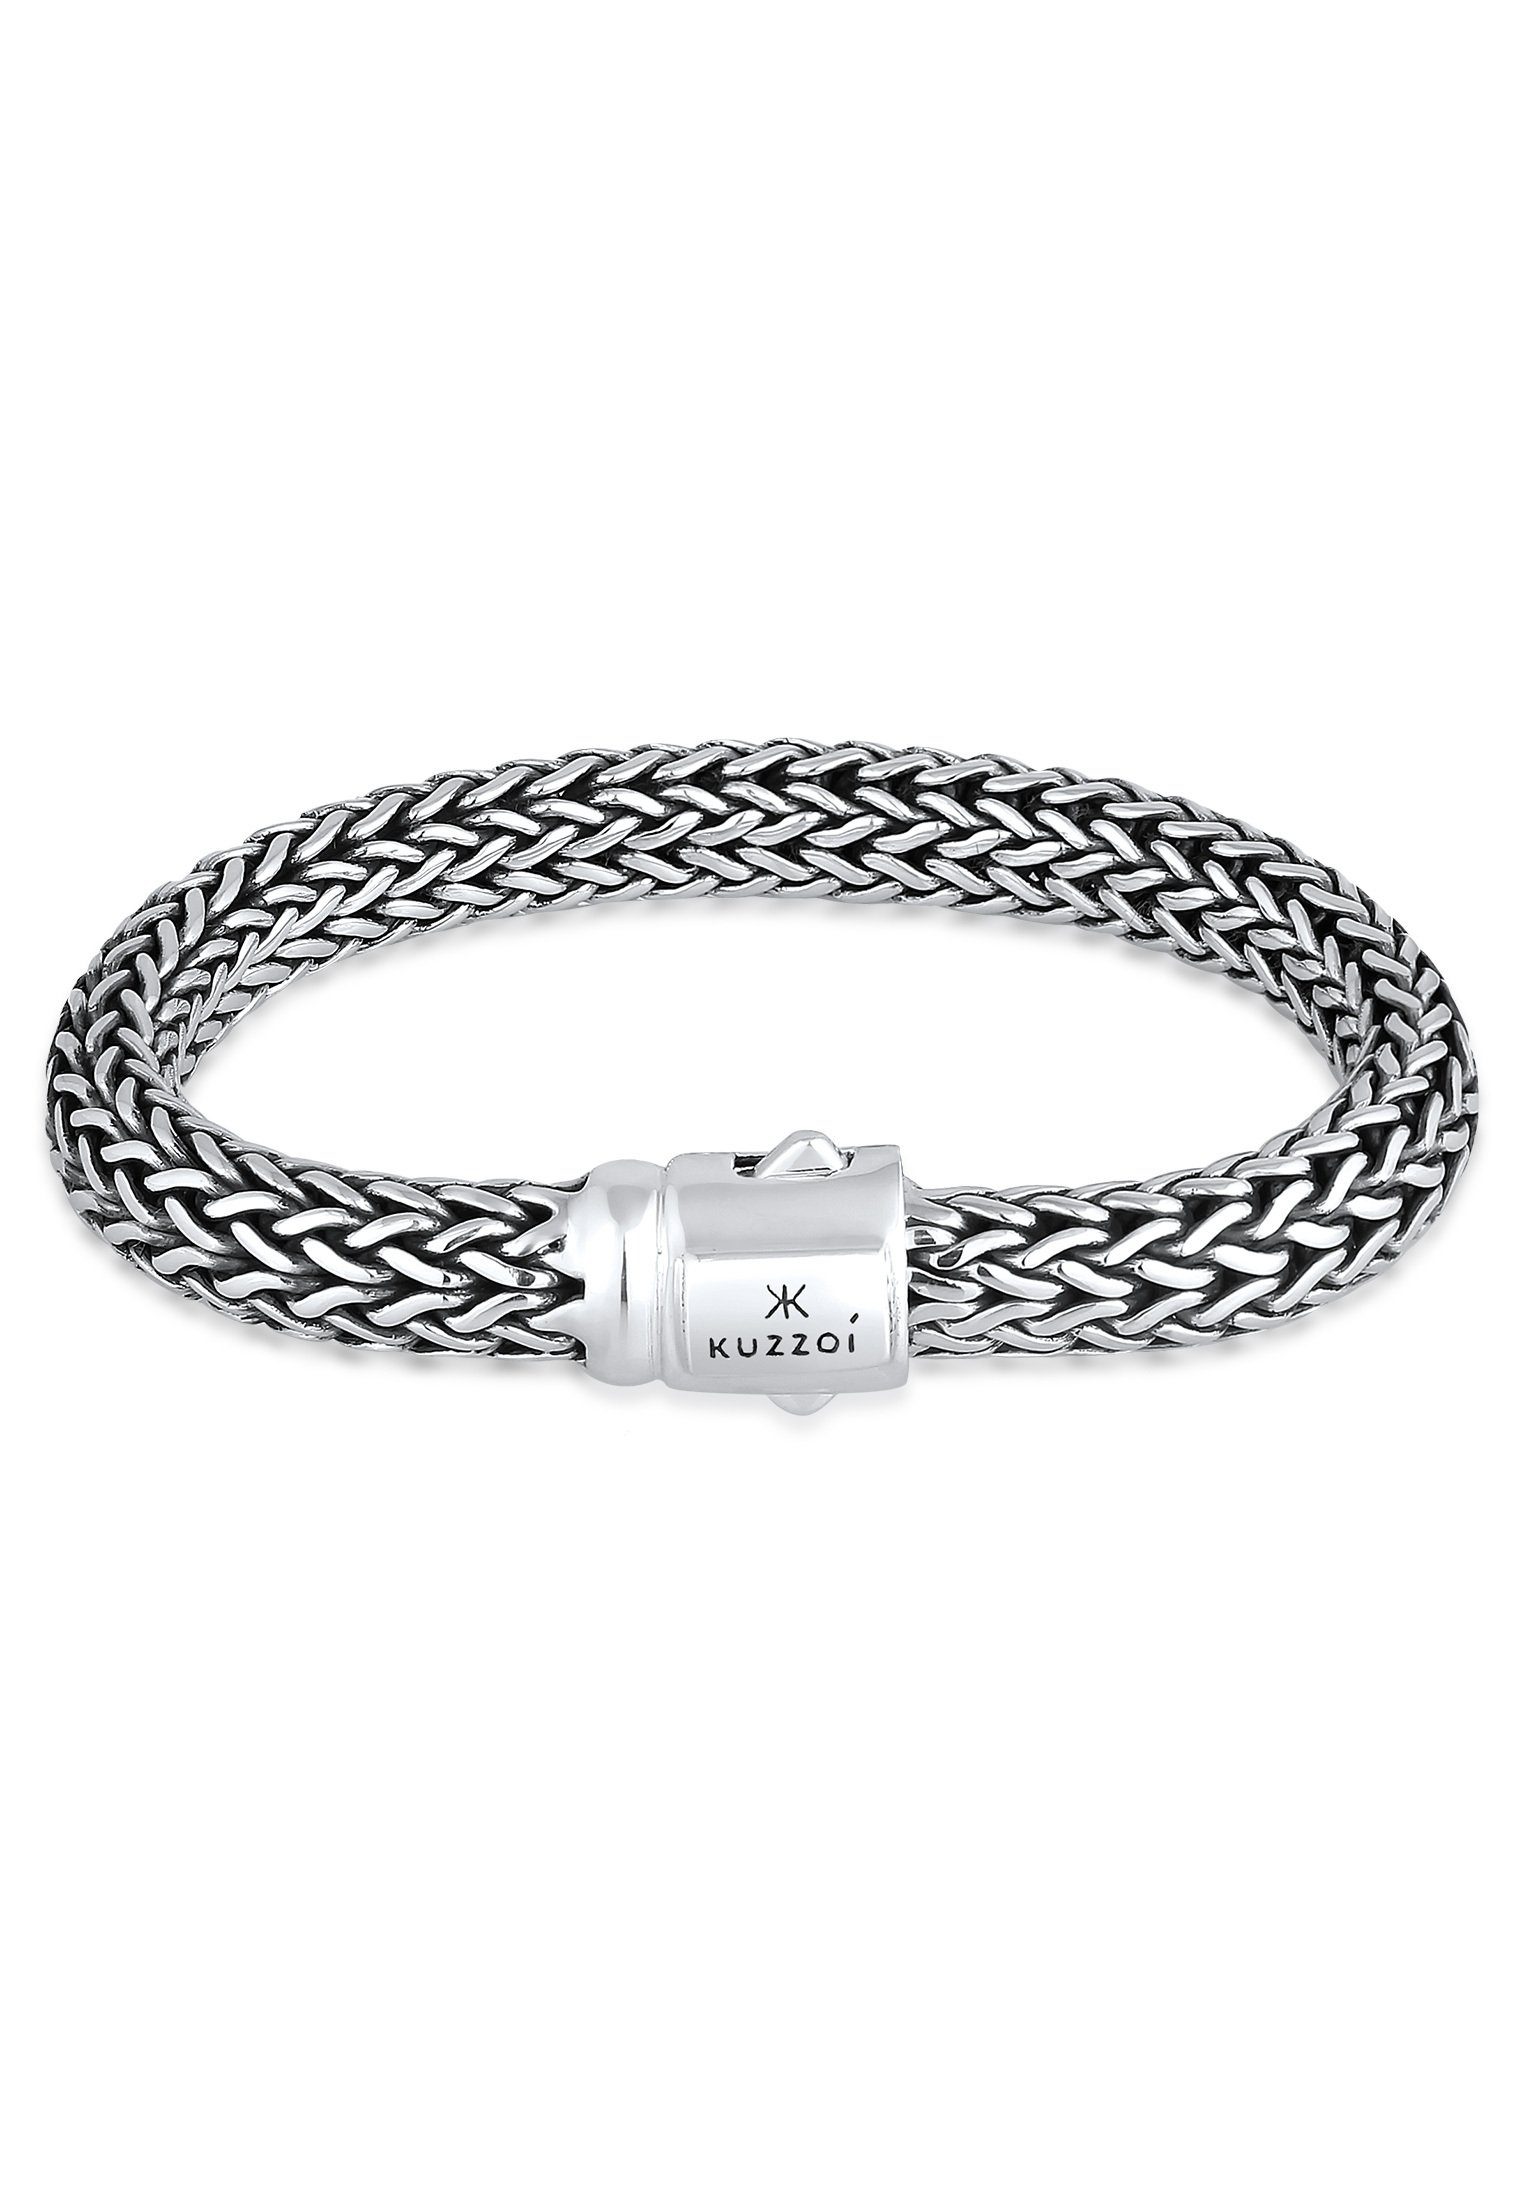 Kuzzoi Armband Gliederarmband Basic Cool unisex 925 Silber, In sehr  hochwertiger Juwelier-Qualität gefertigt